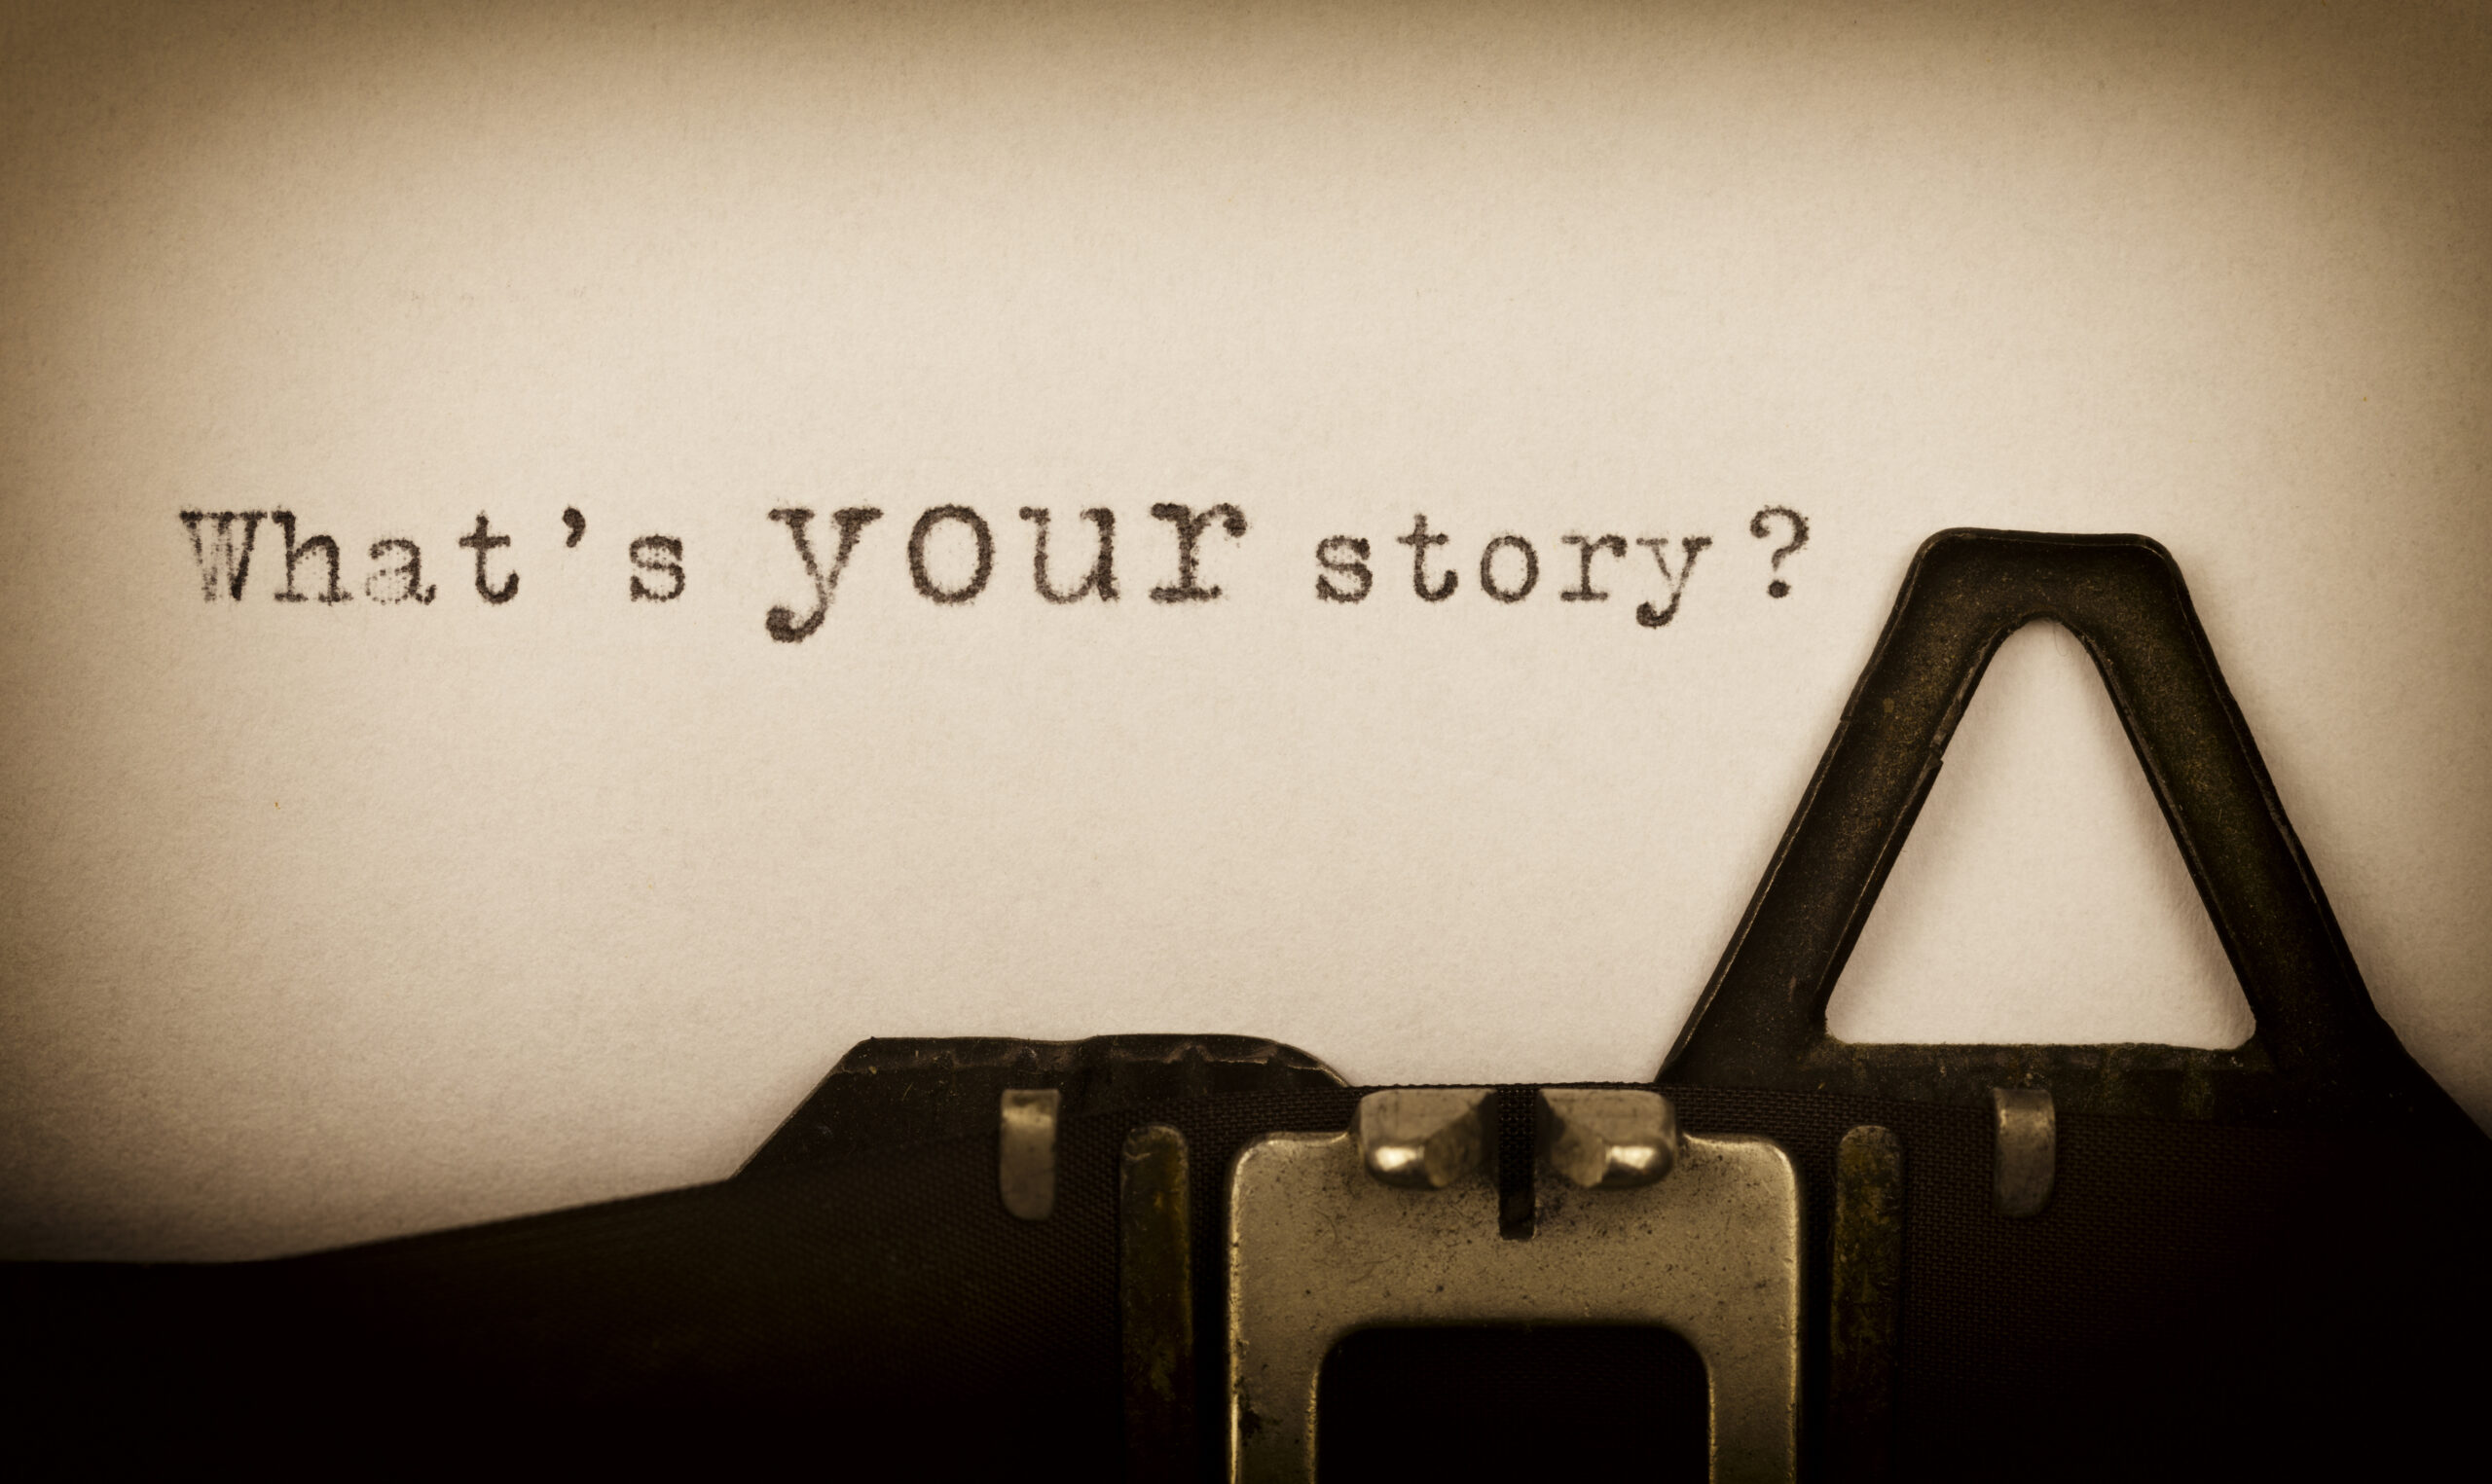 What's your story? - geschrieben auf einer alten Schreibmaschine -